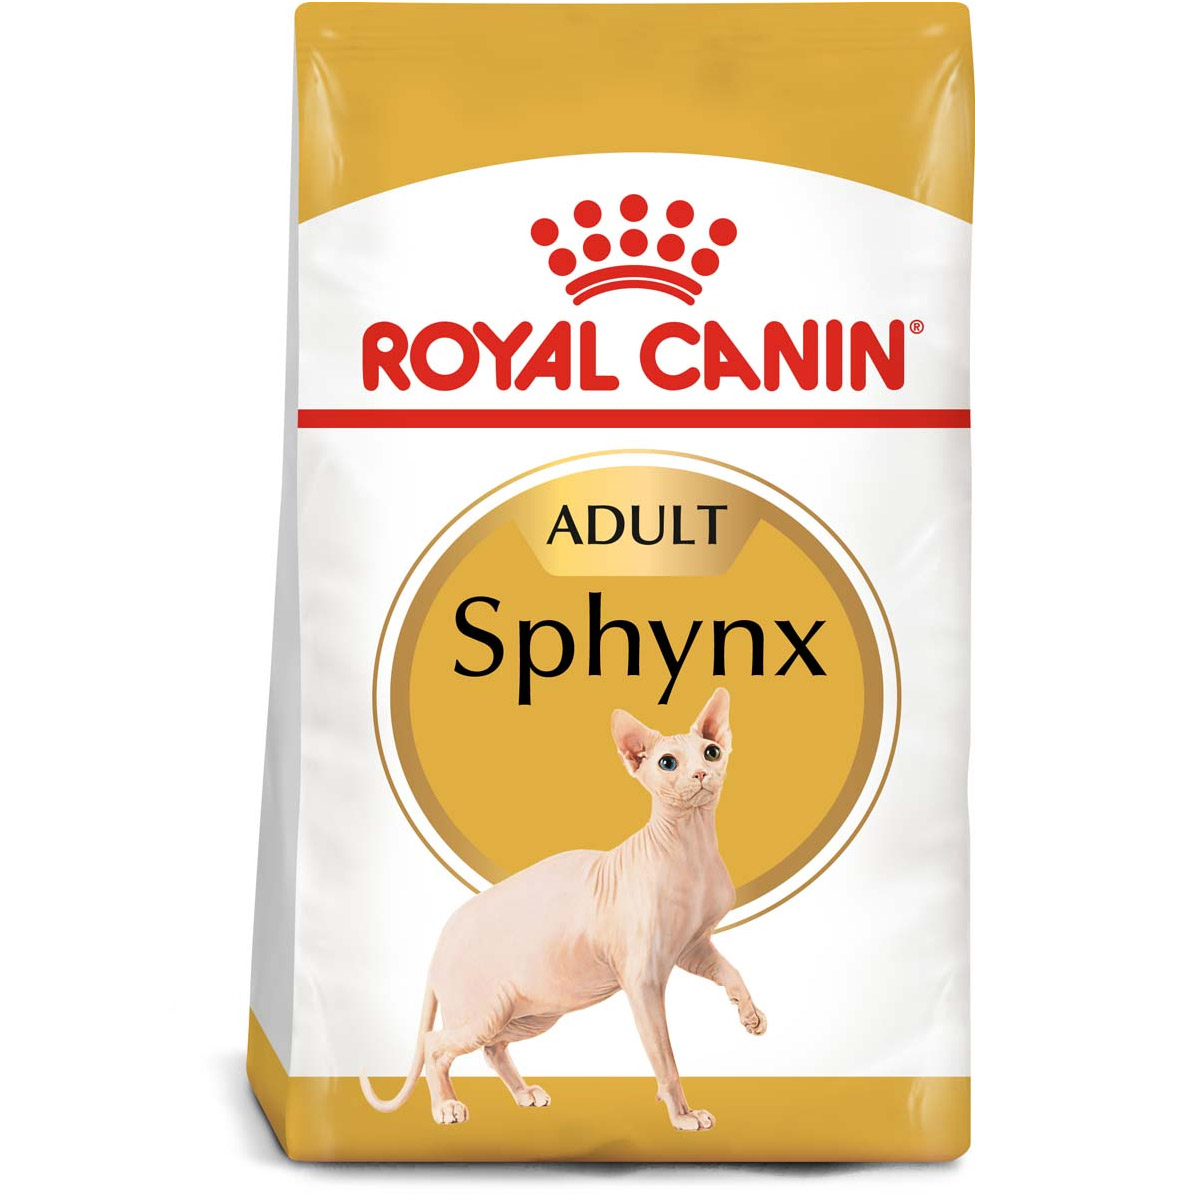 ROYAL CANIN Sphynx Adult Katzenfutter trocken 10kg von Royal Canin